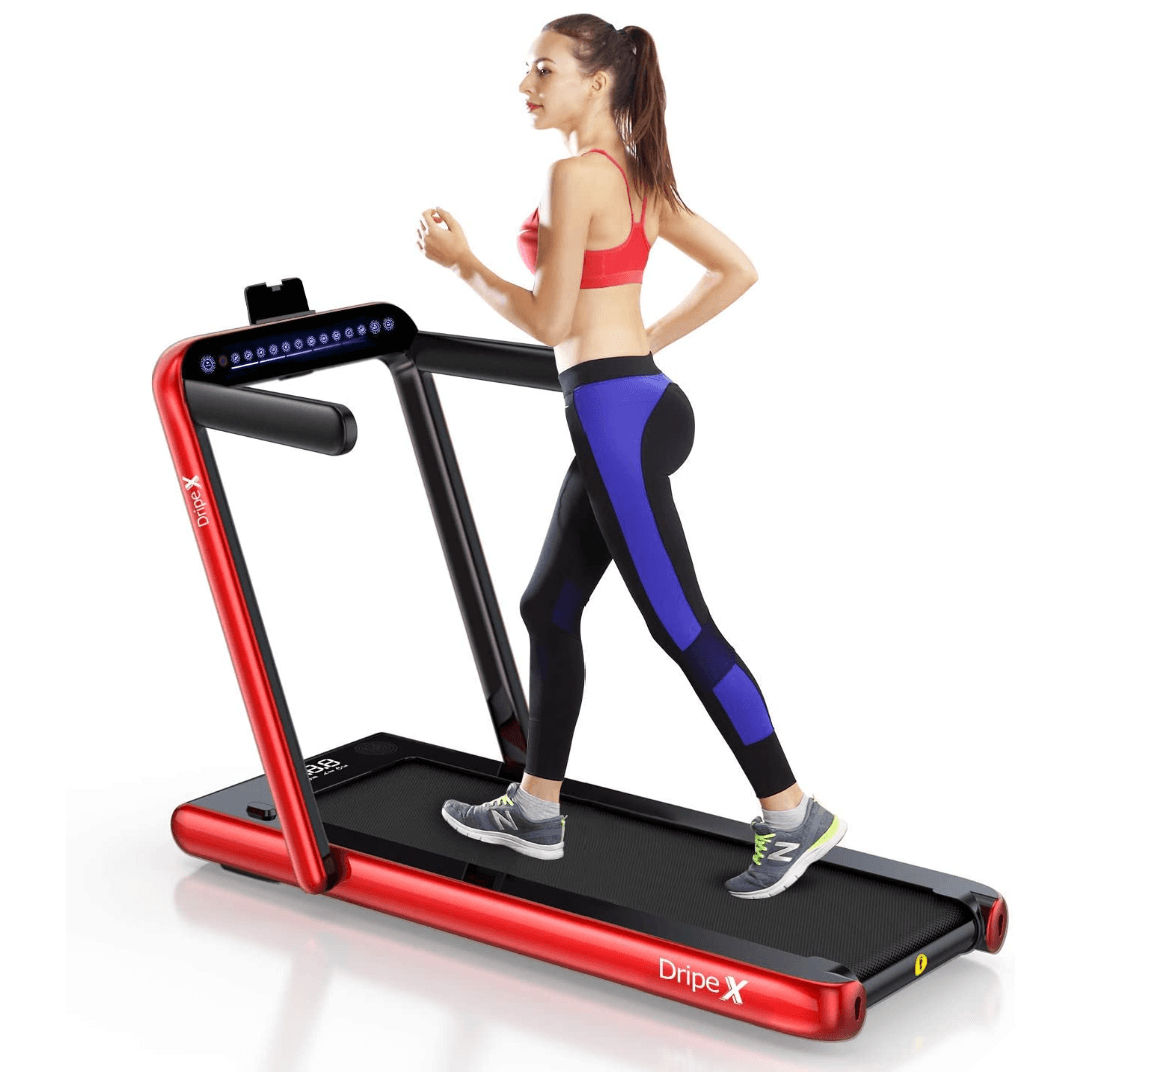 Dripex 2 in 1 Folding Treadmill